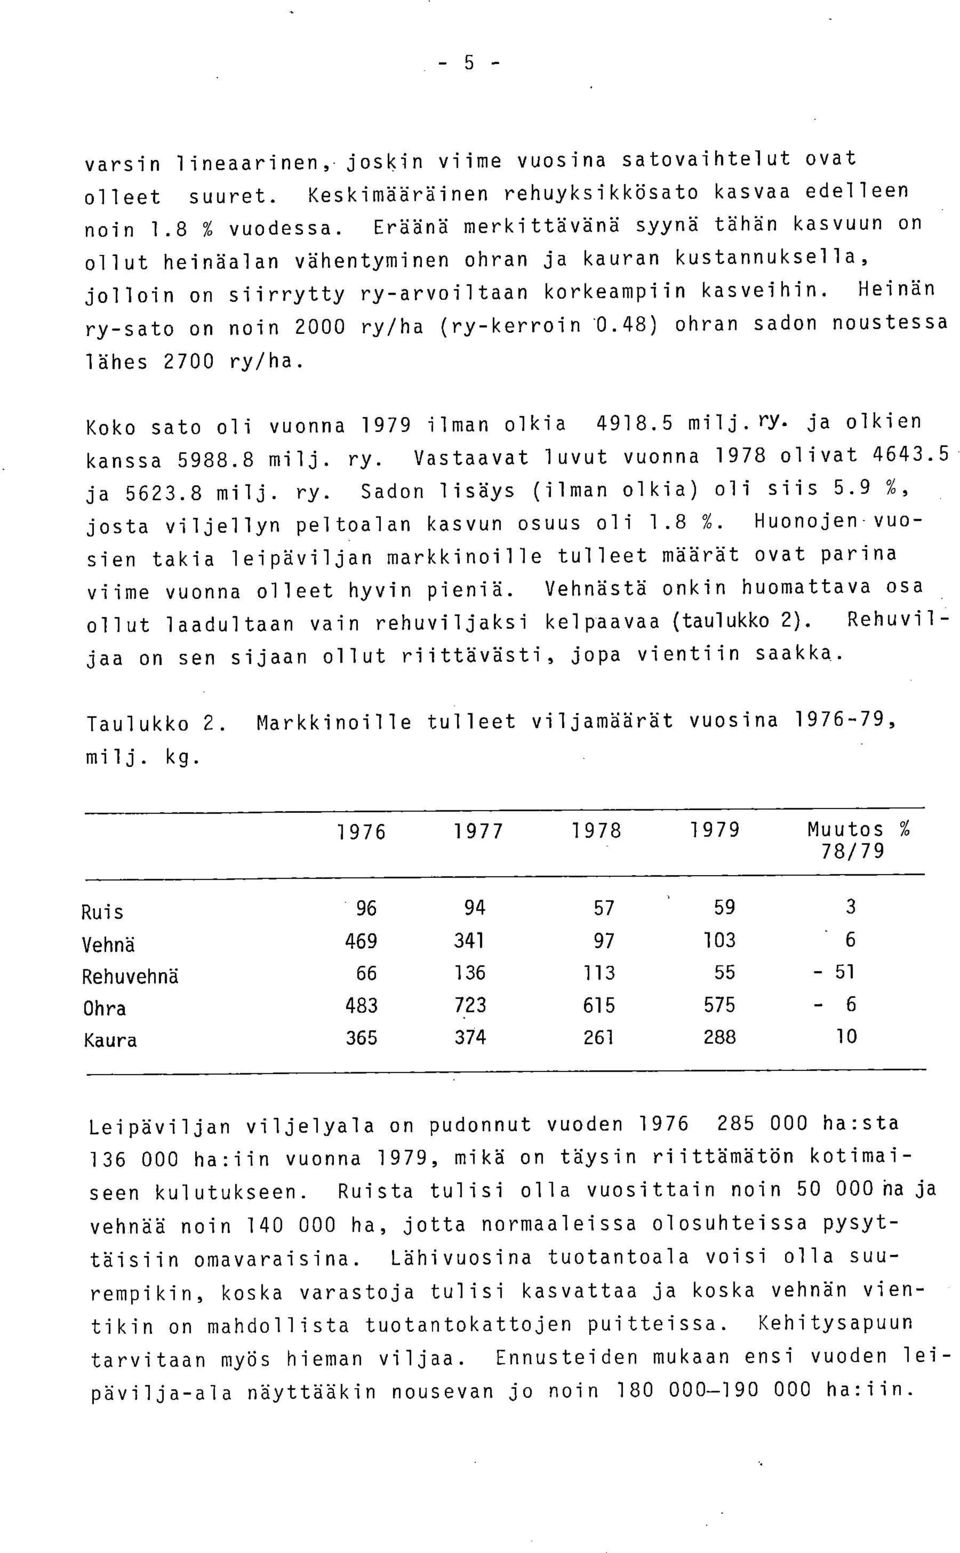 Heinän ry-sato on noin 2000 ry/ha (ry-kerroin '0.48) ohran sadon noustessa lähes 2700 ry/ha. Koko sato oli vuonna 1979 ilman olkia 4918.5 milj.ry. ja olkien kanssa 5988.8 milj. ry. Vastaavat luvut vuonna 1978 olivat 4643.